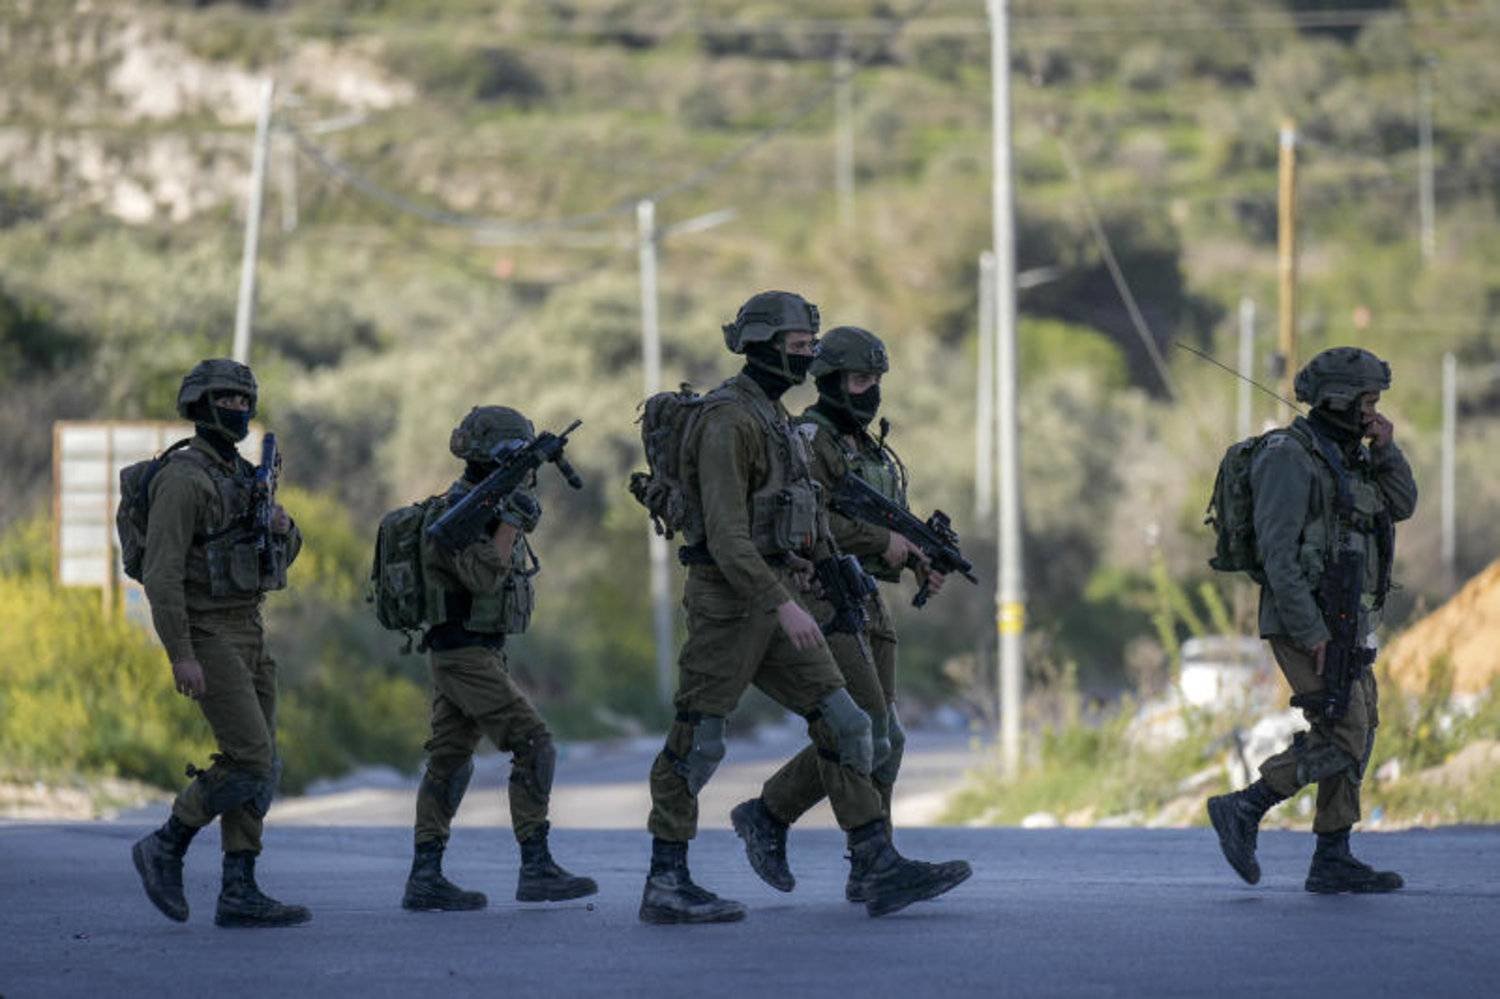 الاحتلال يعتقل 13 مواطنا بينهم سيدة ويستدعي آخرين في قطنة شمال غرب القدس